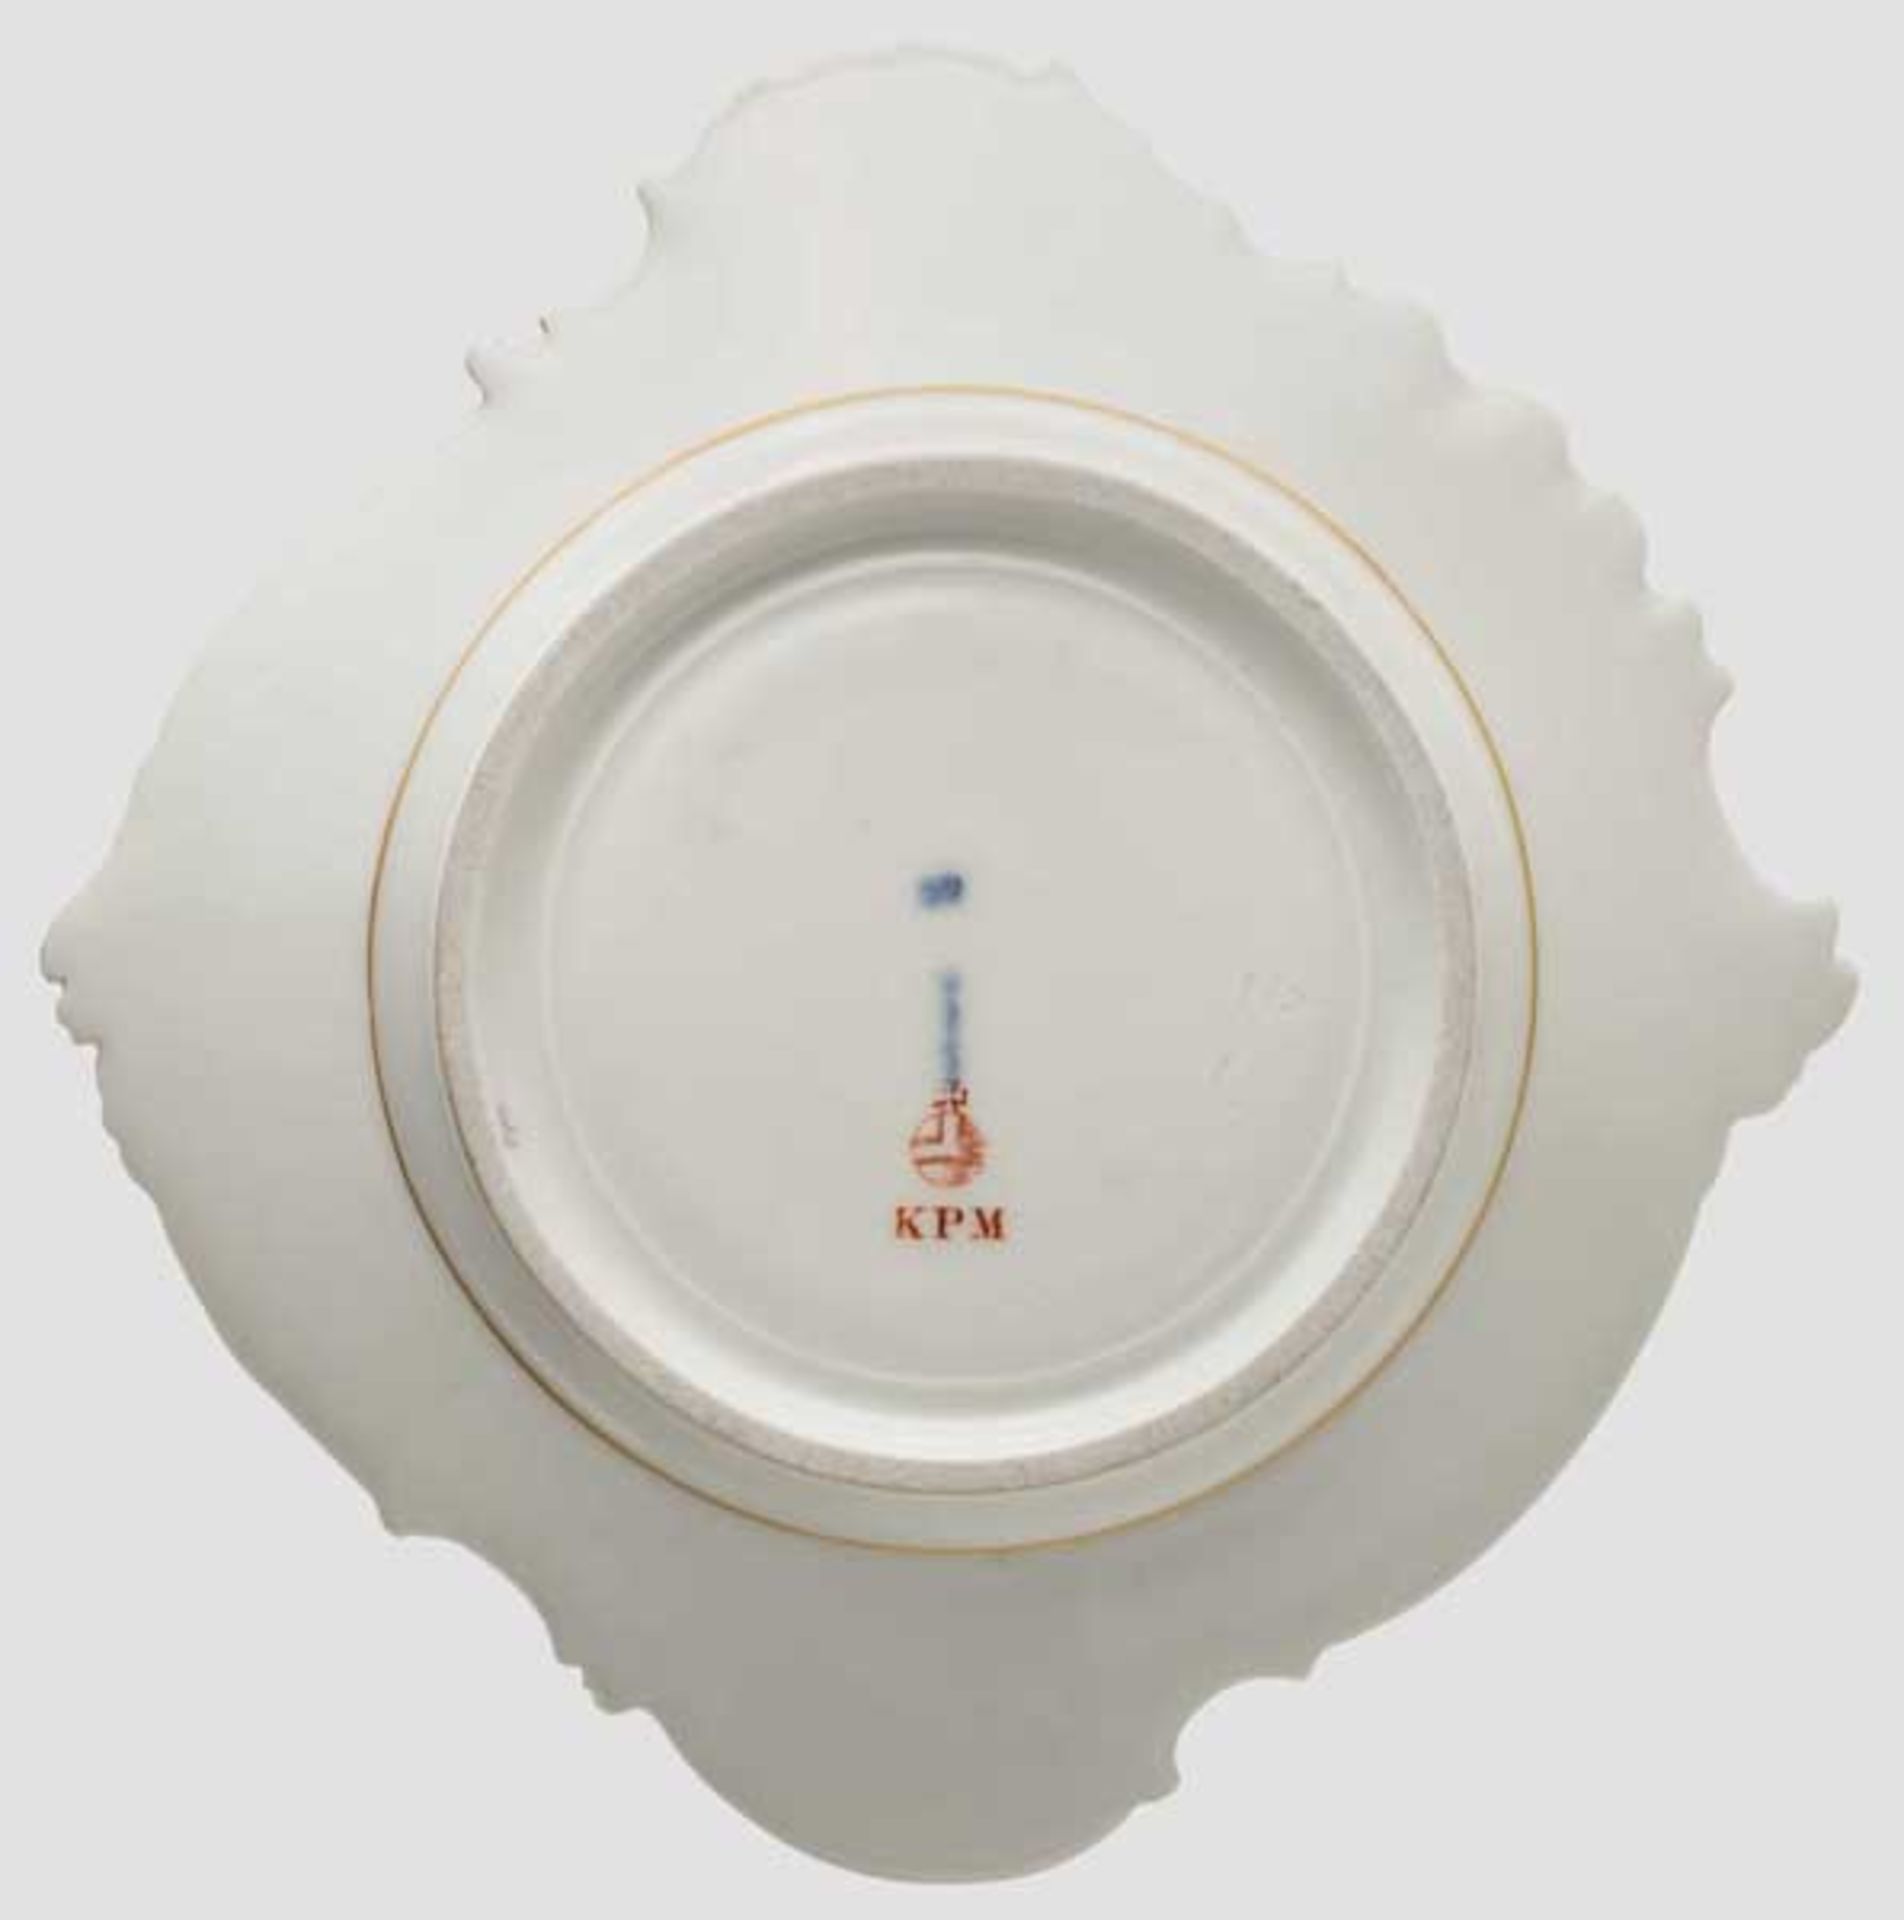 KPM-Schauteller mit Wappen des Hauses Hohenzollern Weißes, glasiertes Porzellan mit geschweiftem - Bild 2 aus 2